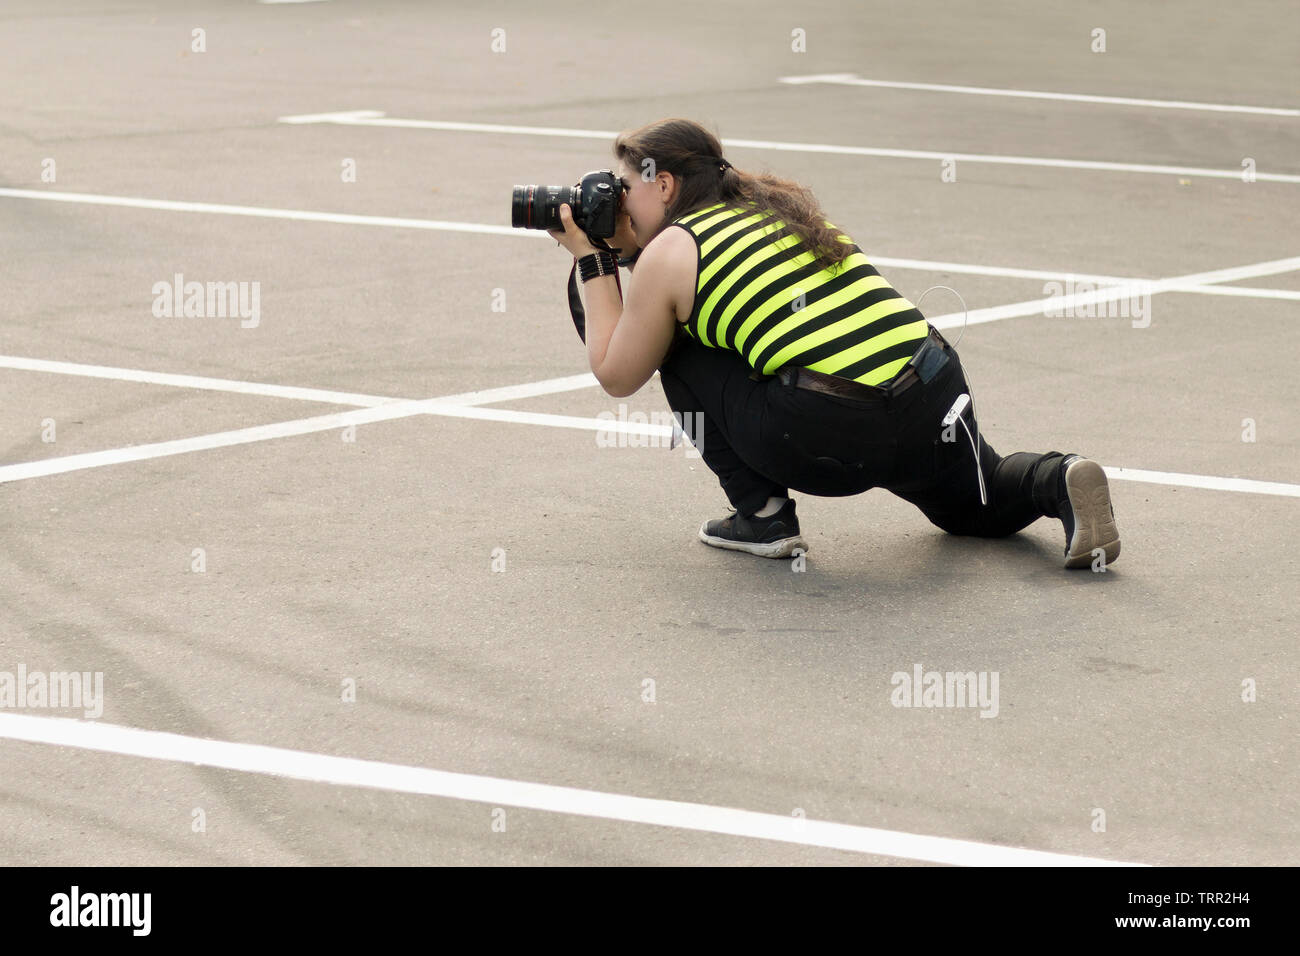 Un fotografo femmina con fotocamera DSLR è segretamente a scattare foto di qualcuno nel parcheggio. Fotografare nascosto, concetto di paparazzi Foto Stock